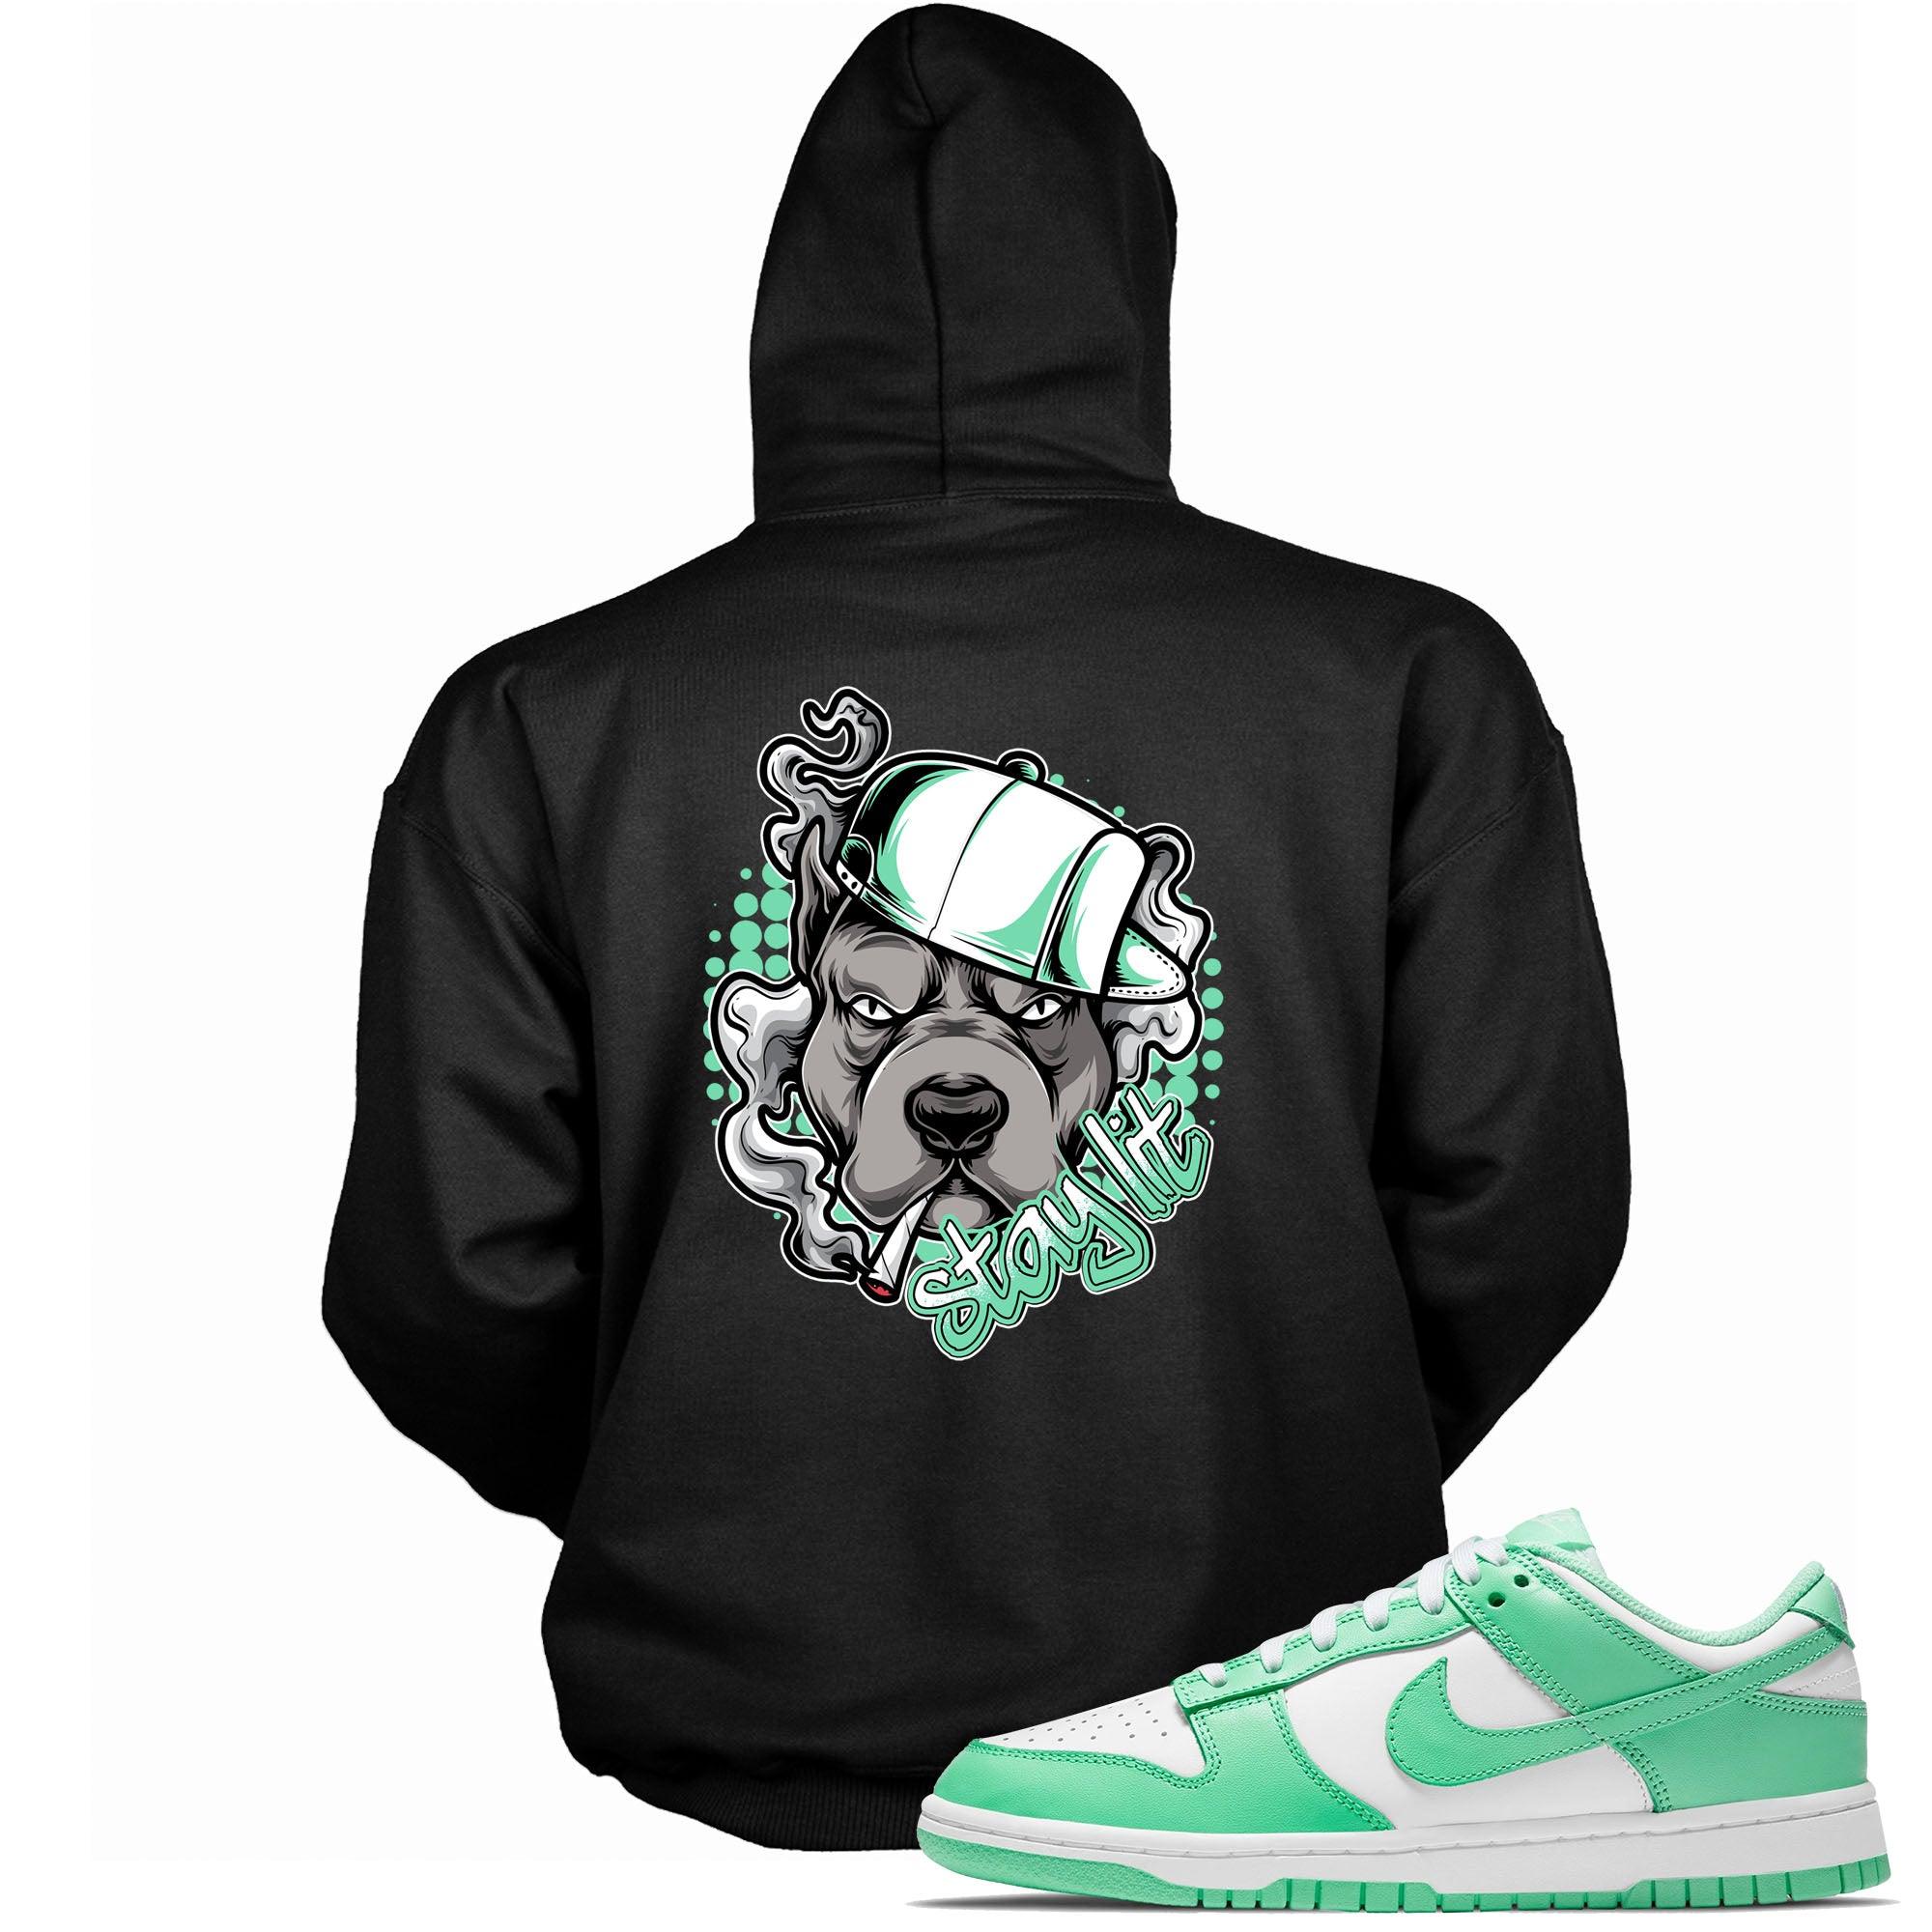 Stay Lit Hooded Sneaker Sweatshirt Nike Dunk Low Green Glow photo